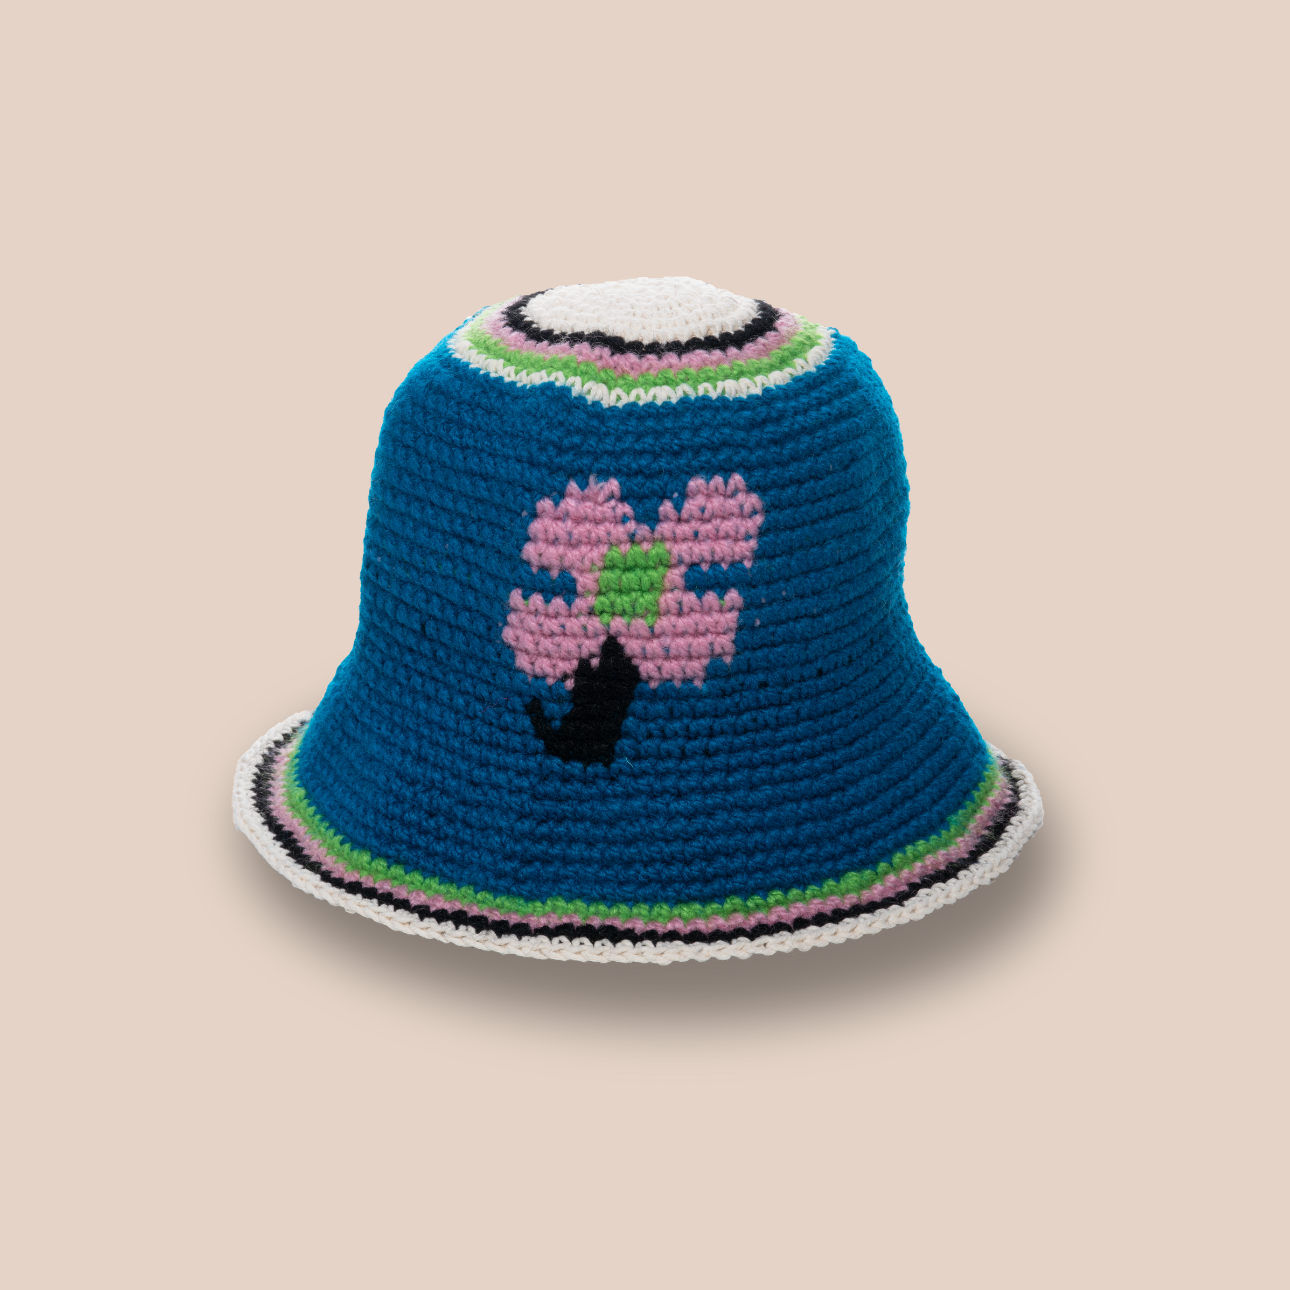 Image du bucket hat motif fleurs de Maison Badigo, bucket hat (bob) en crochet bleu unique et tendance